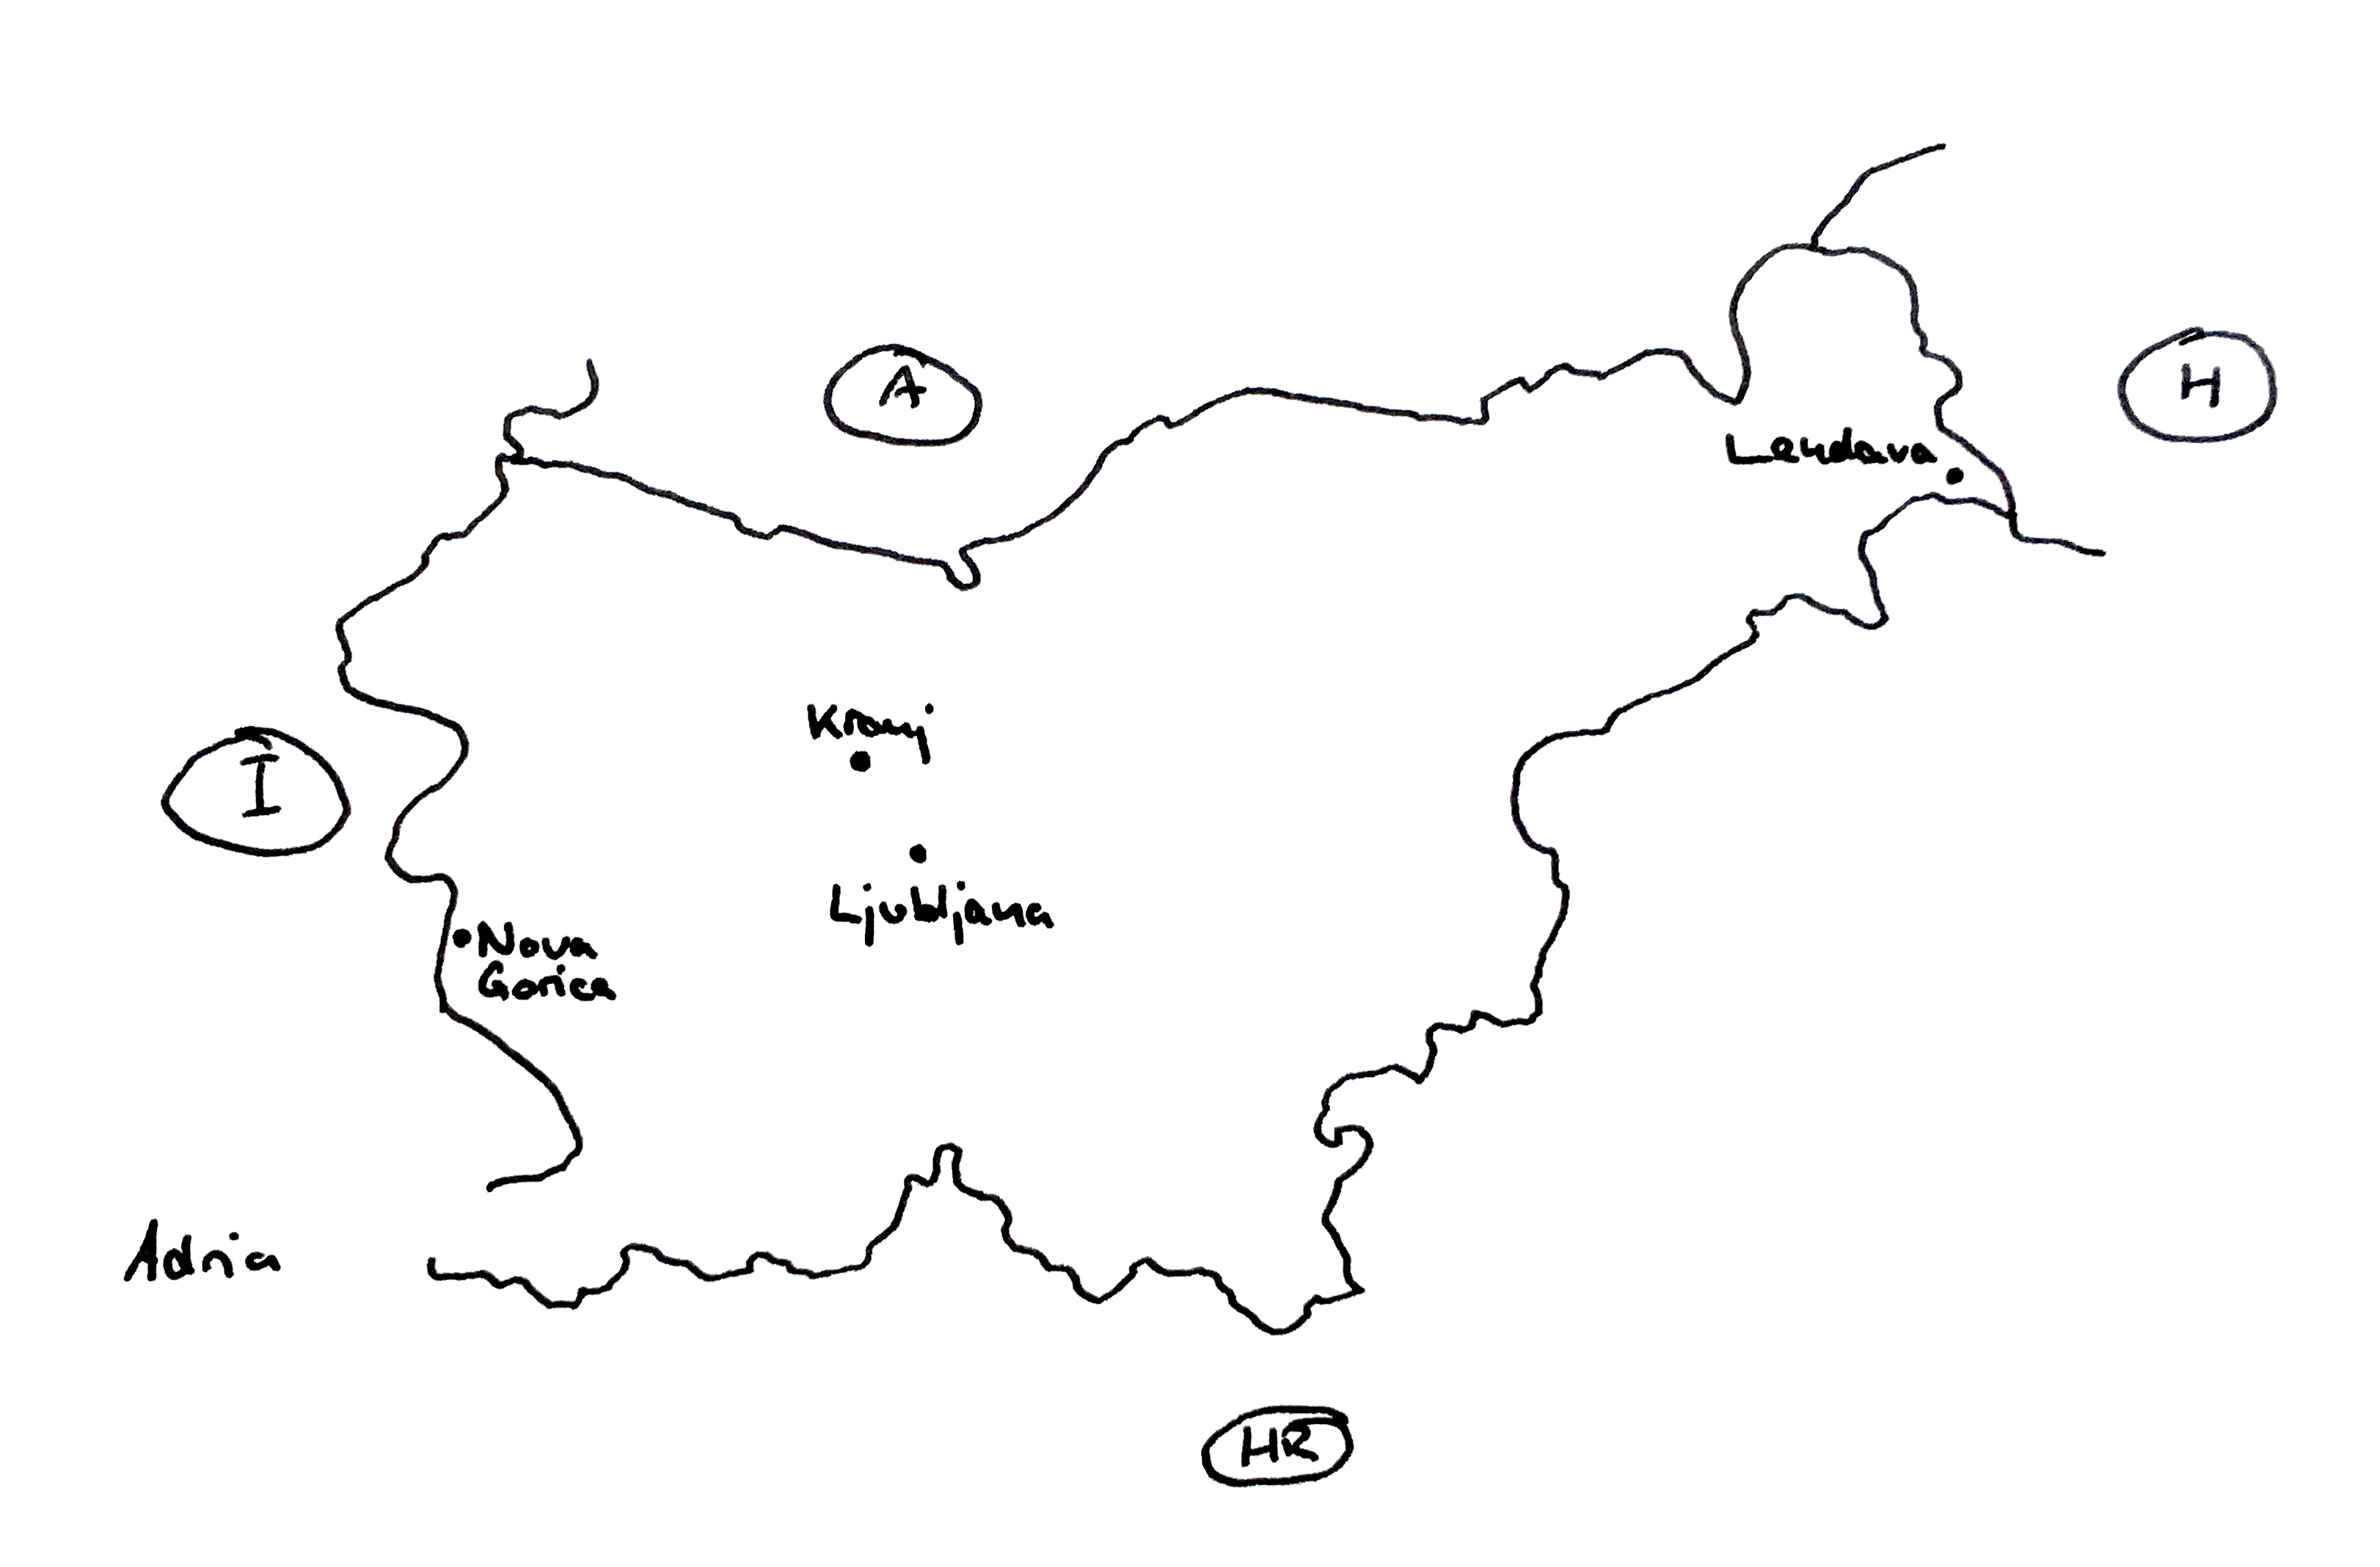 Grobe Skizze Sloweniens mit den vier Bewerberstädten